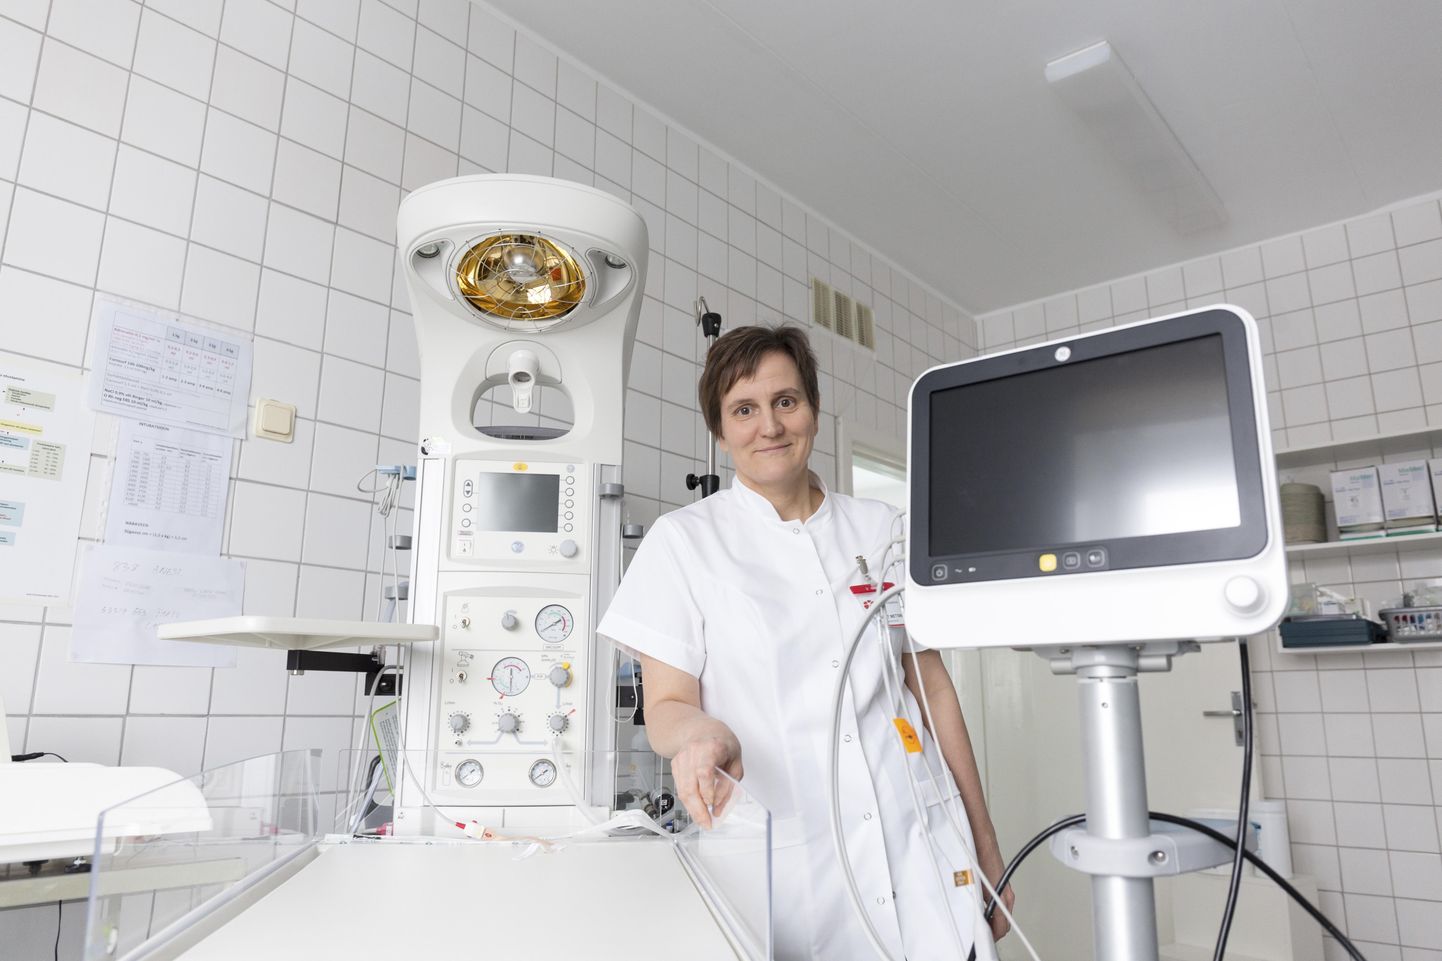 Maret Metsmaa tutvustas Viljandi haigla sünnitusosakonda jõudnud vastsündinute elustamislaua monitori, mis on abiks vastsündinutele, kes vajavad kiiresti lastearsti abi.